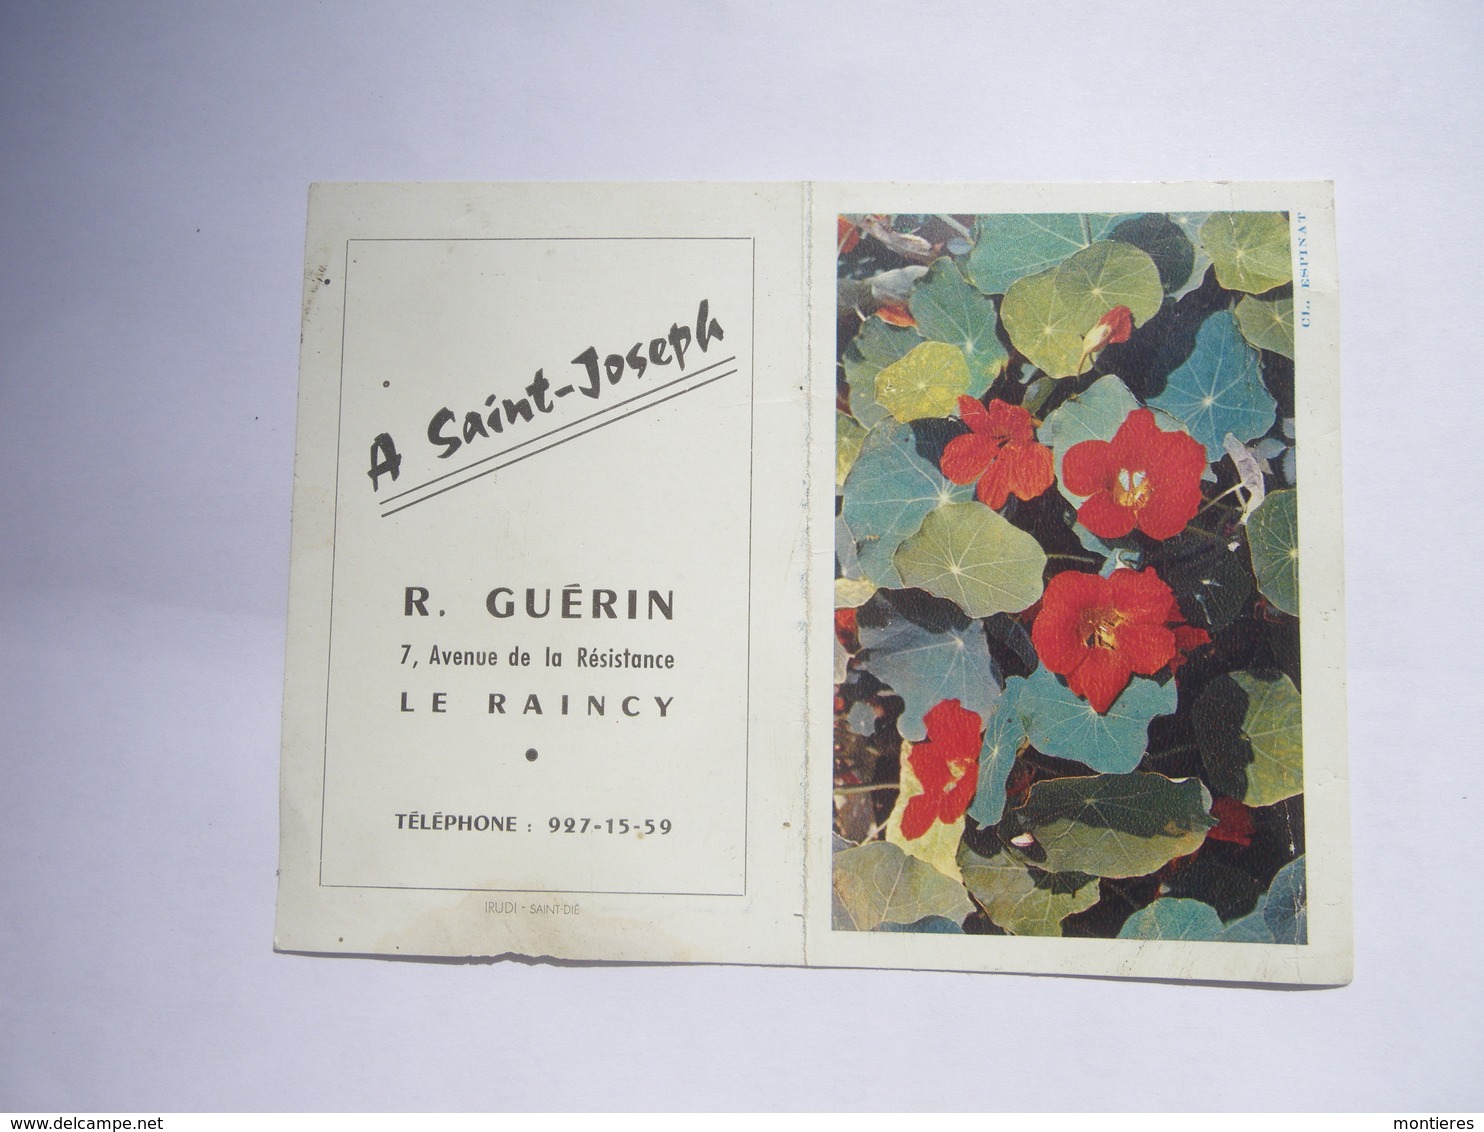 Calendrier De Poche 1963 A Saint Joseph Le Raincy ( Seine Saint Denis ) R. GUERIN 7 Av. De La Résistance - Artesanos